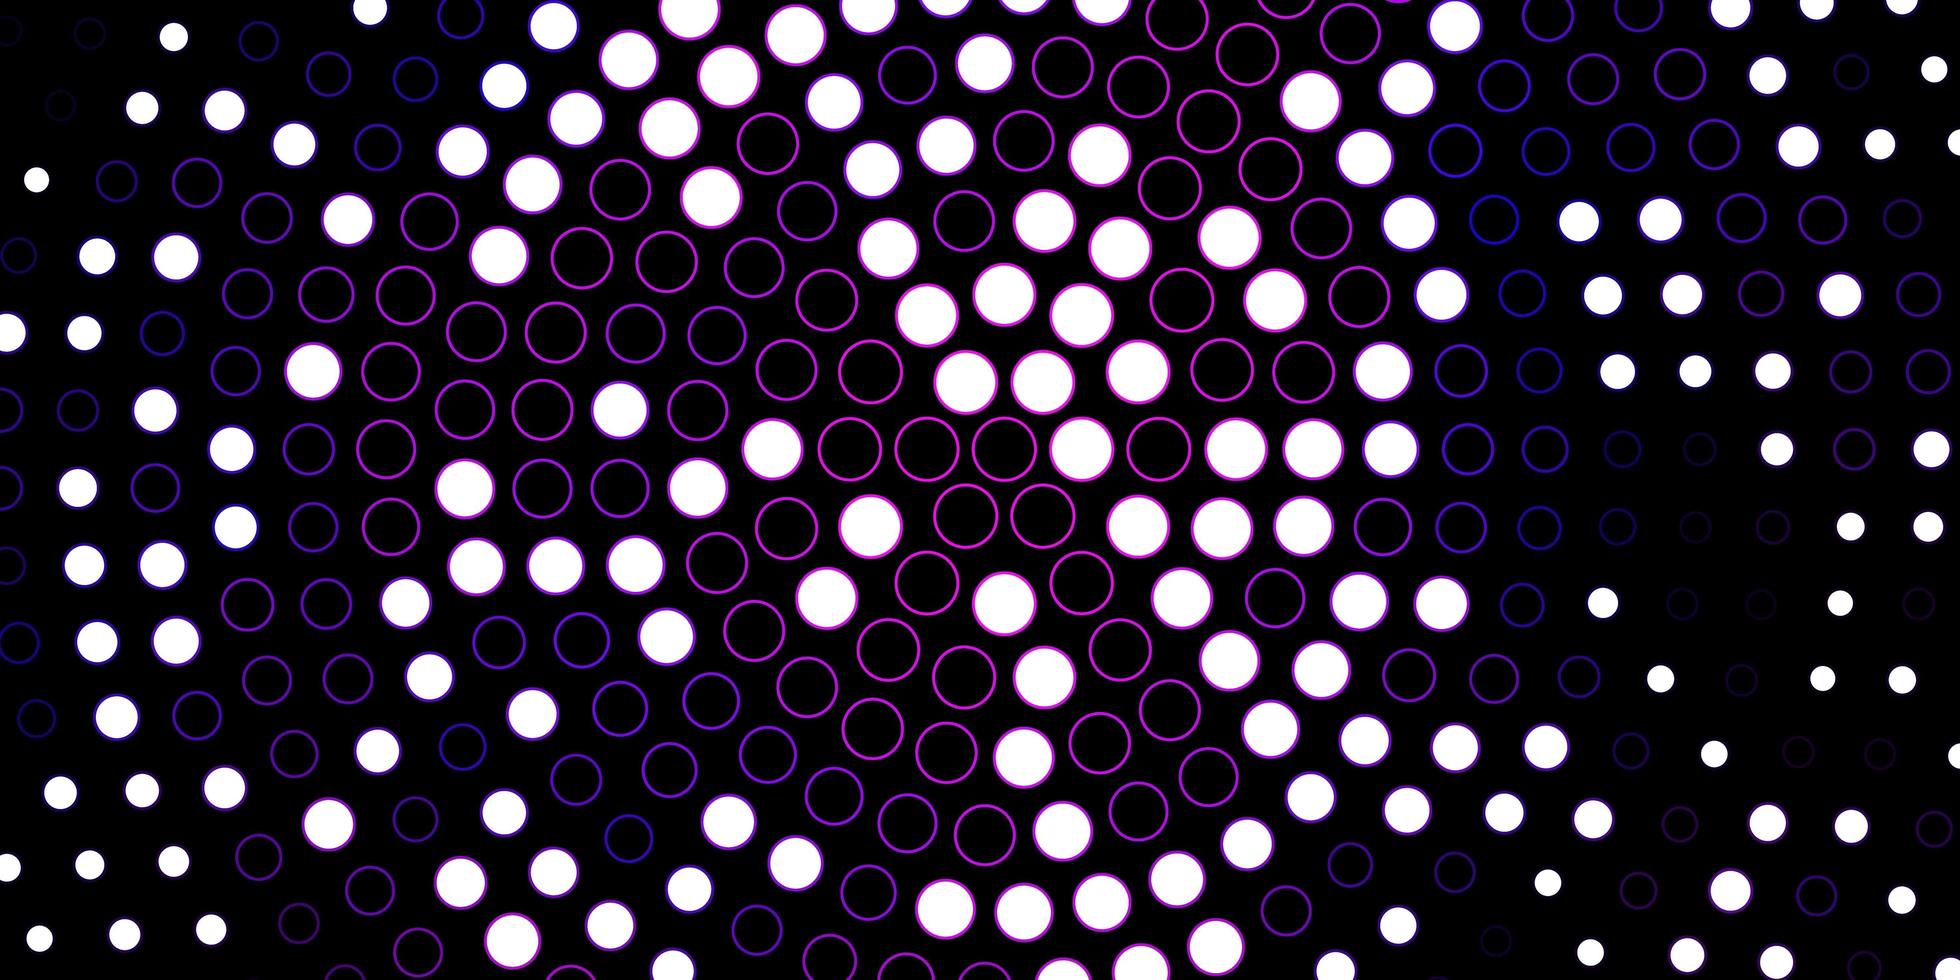 pano de fundo de vetor roxo escuro com círculos abstratos discos coloridos em design de fundo gradiente simples para seus comerciais